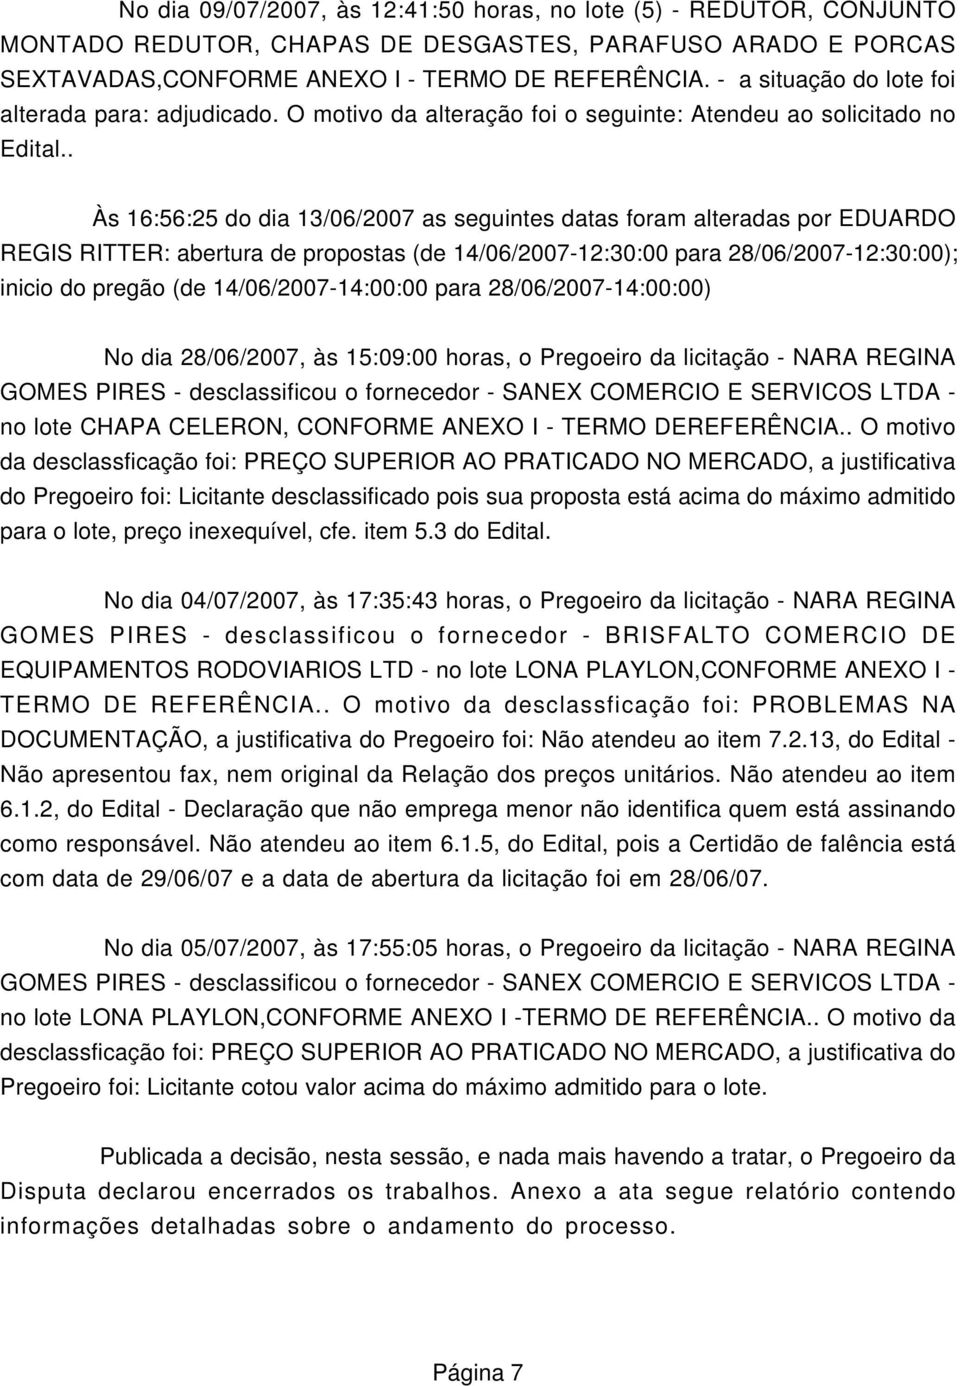 . Às 16:56:25 do dia 13/06/2007 as seguintes datas foram alteradas por EDUARDO REGIS RITTER: abertura de propostas (de 14/06/2007-12:30:00 para 28/06/2007-12:30:00); inicio do pregão (de